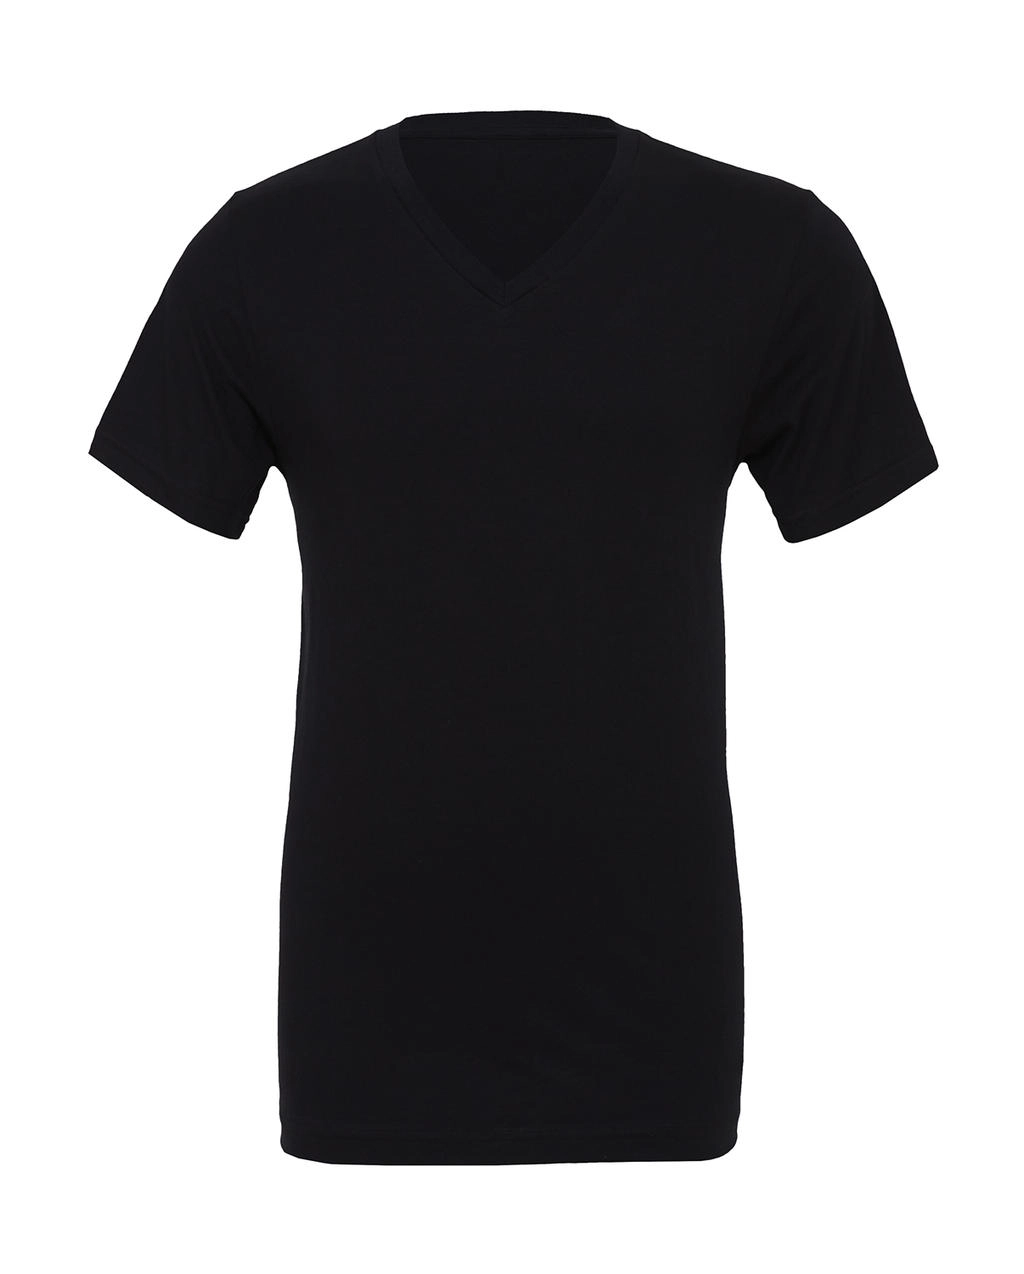 Unisex Jersey V-Neck T-Shirt zum Besticken und Bedrucken in der Farbe Black mit Ihren Logo, Schriftzug oder Motiv.